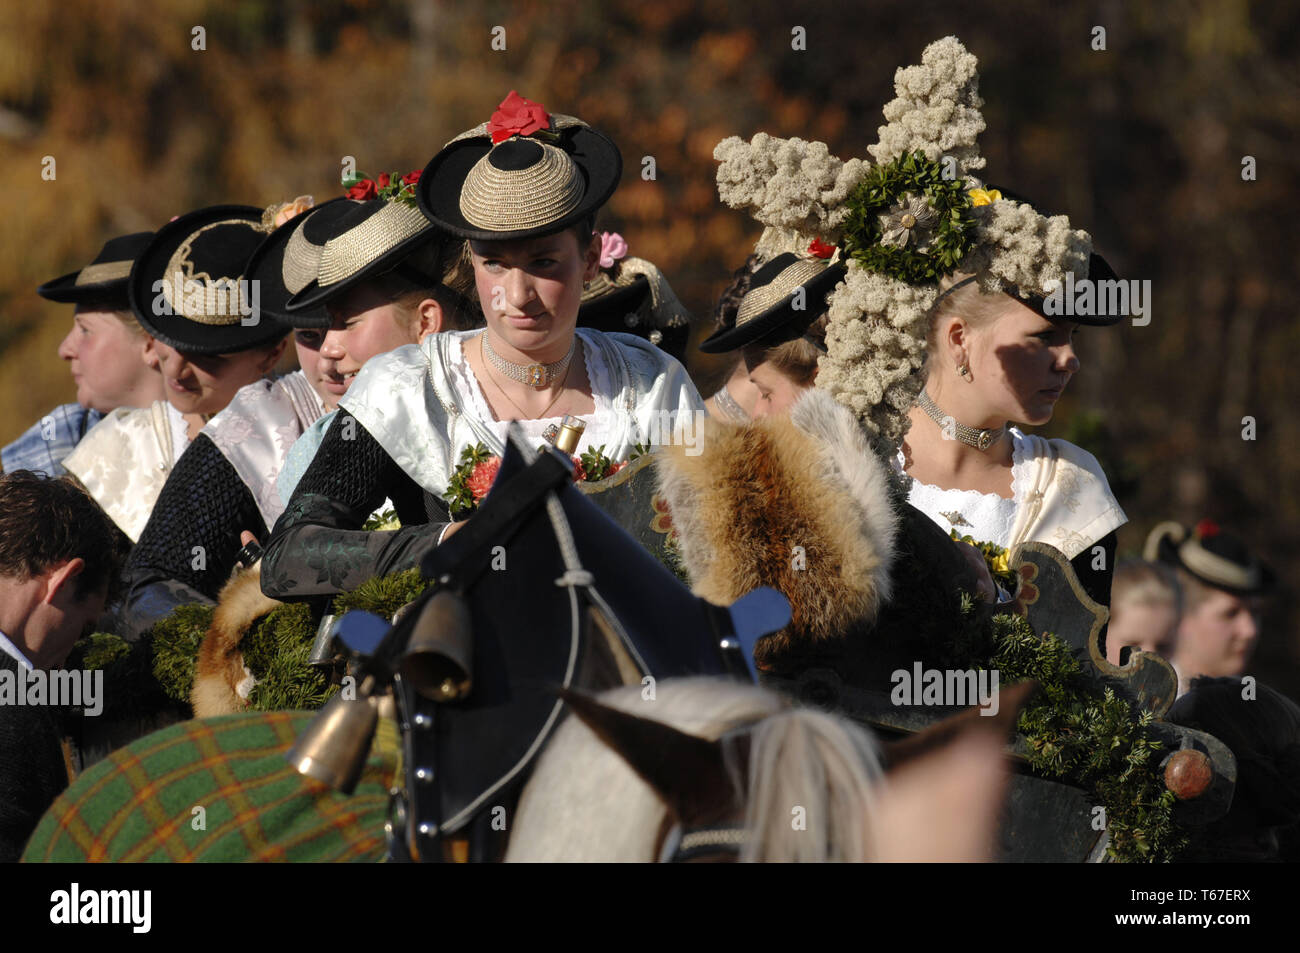 Leonhardifahrt ou Leonhardiritt, une procession avec gerbes, une tradition bavaroise, Allemagne du Sud Banque D'Images